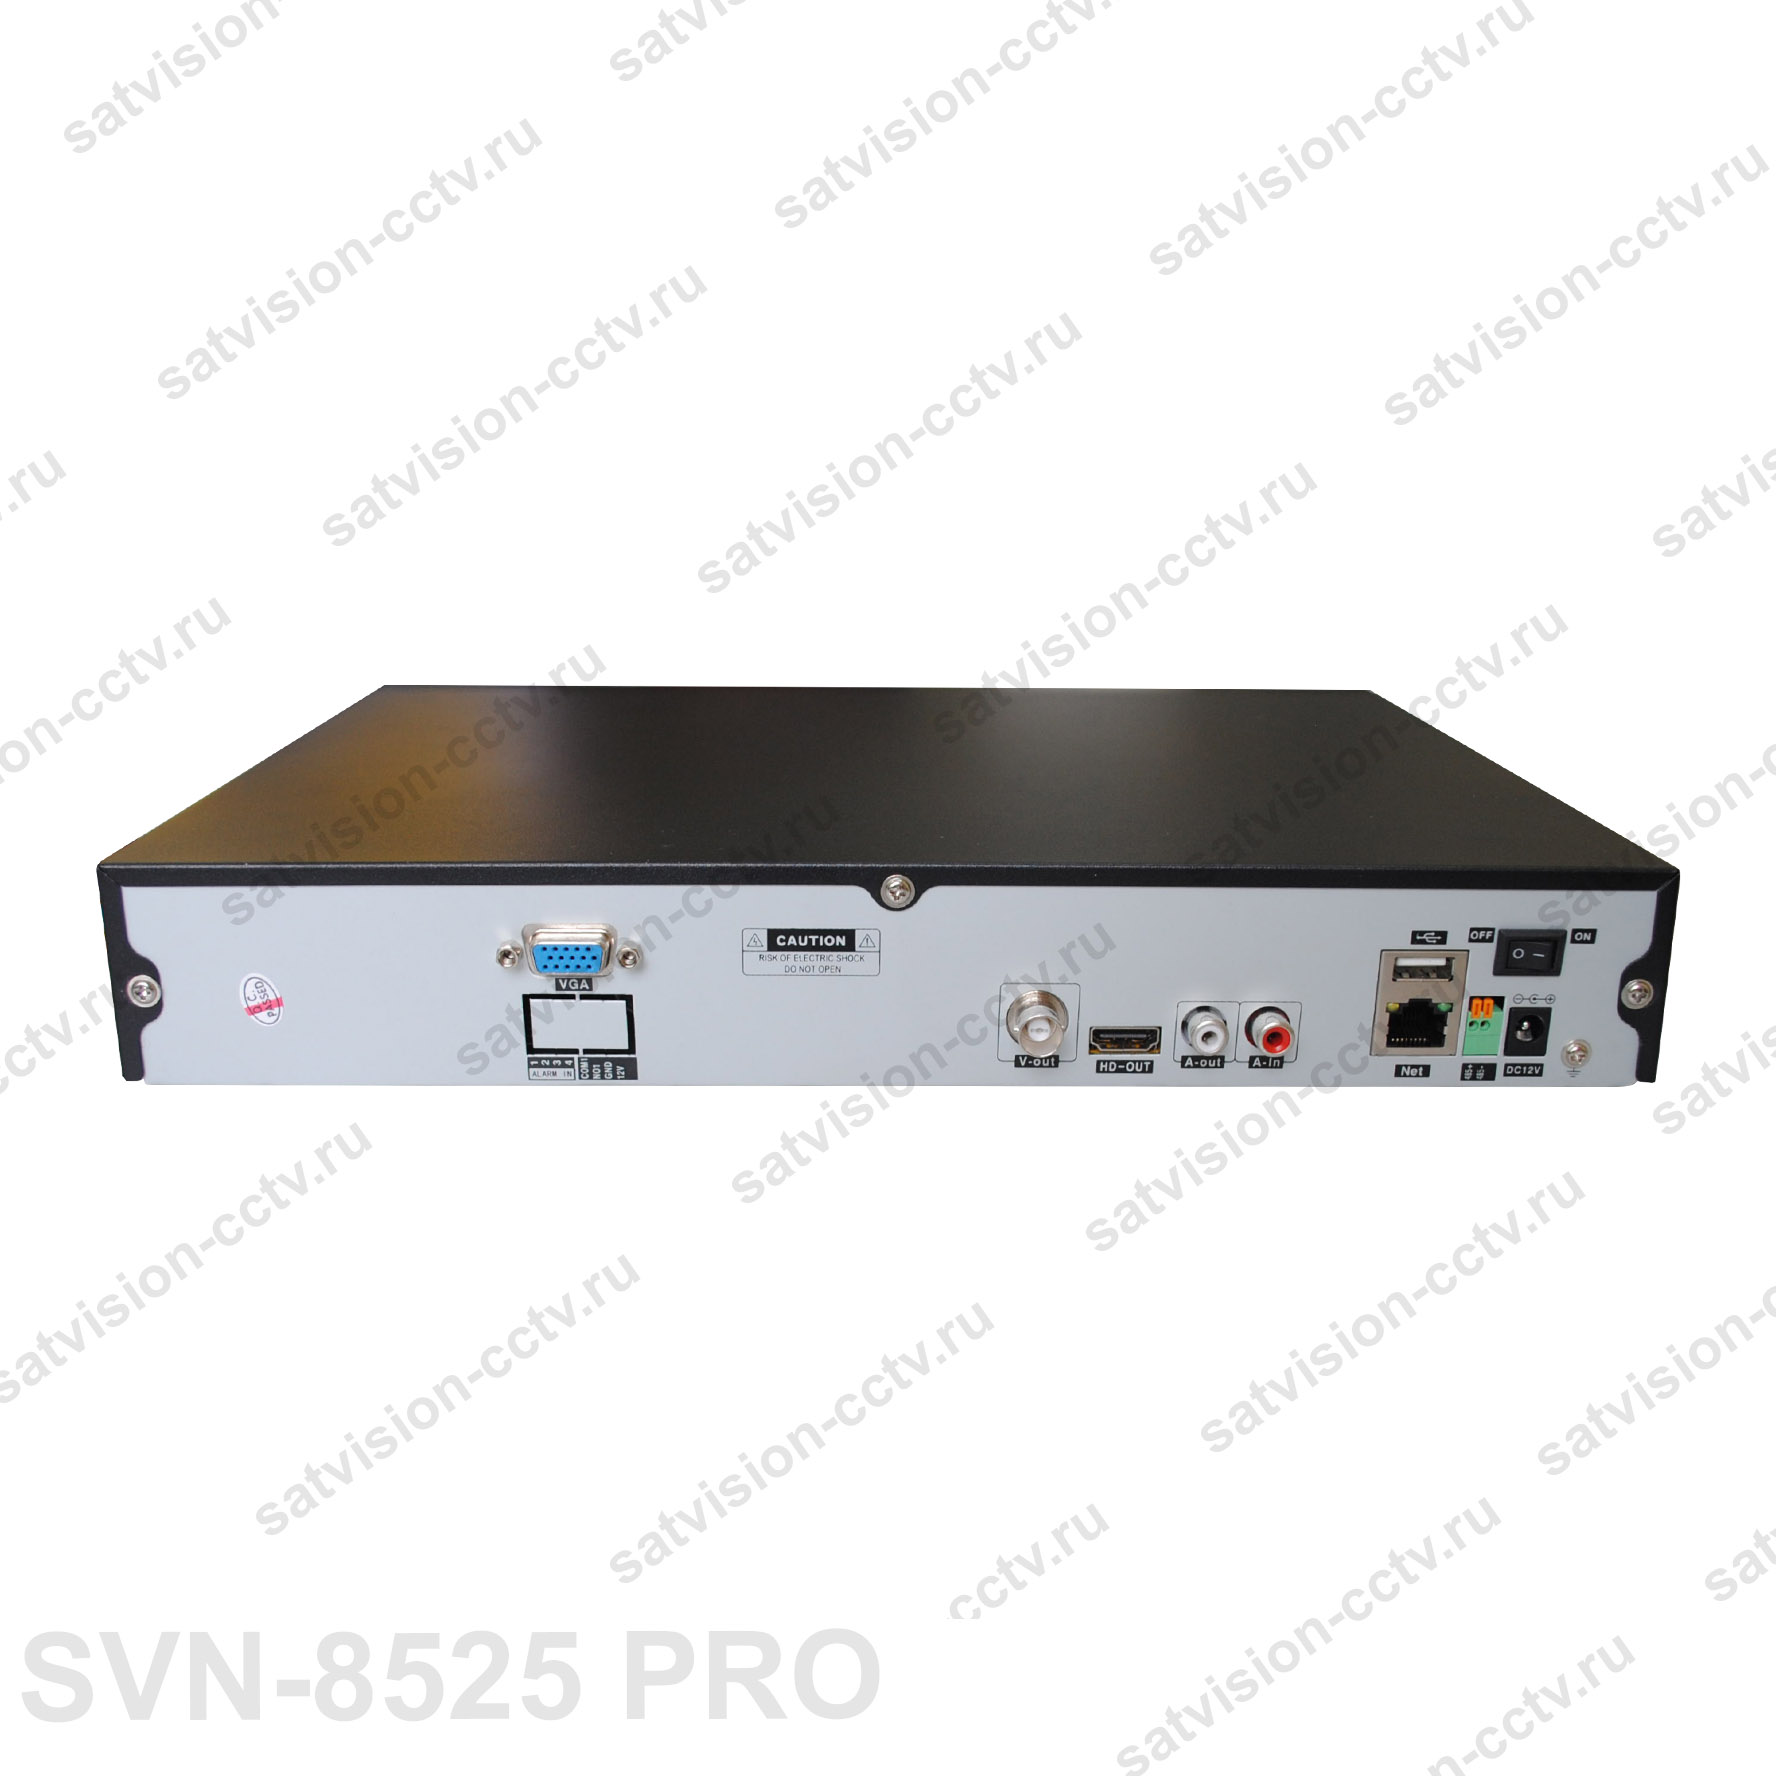 SVN-8525 PRO